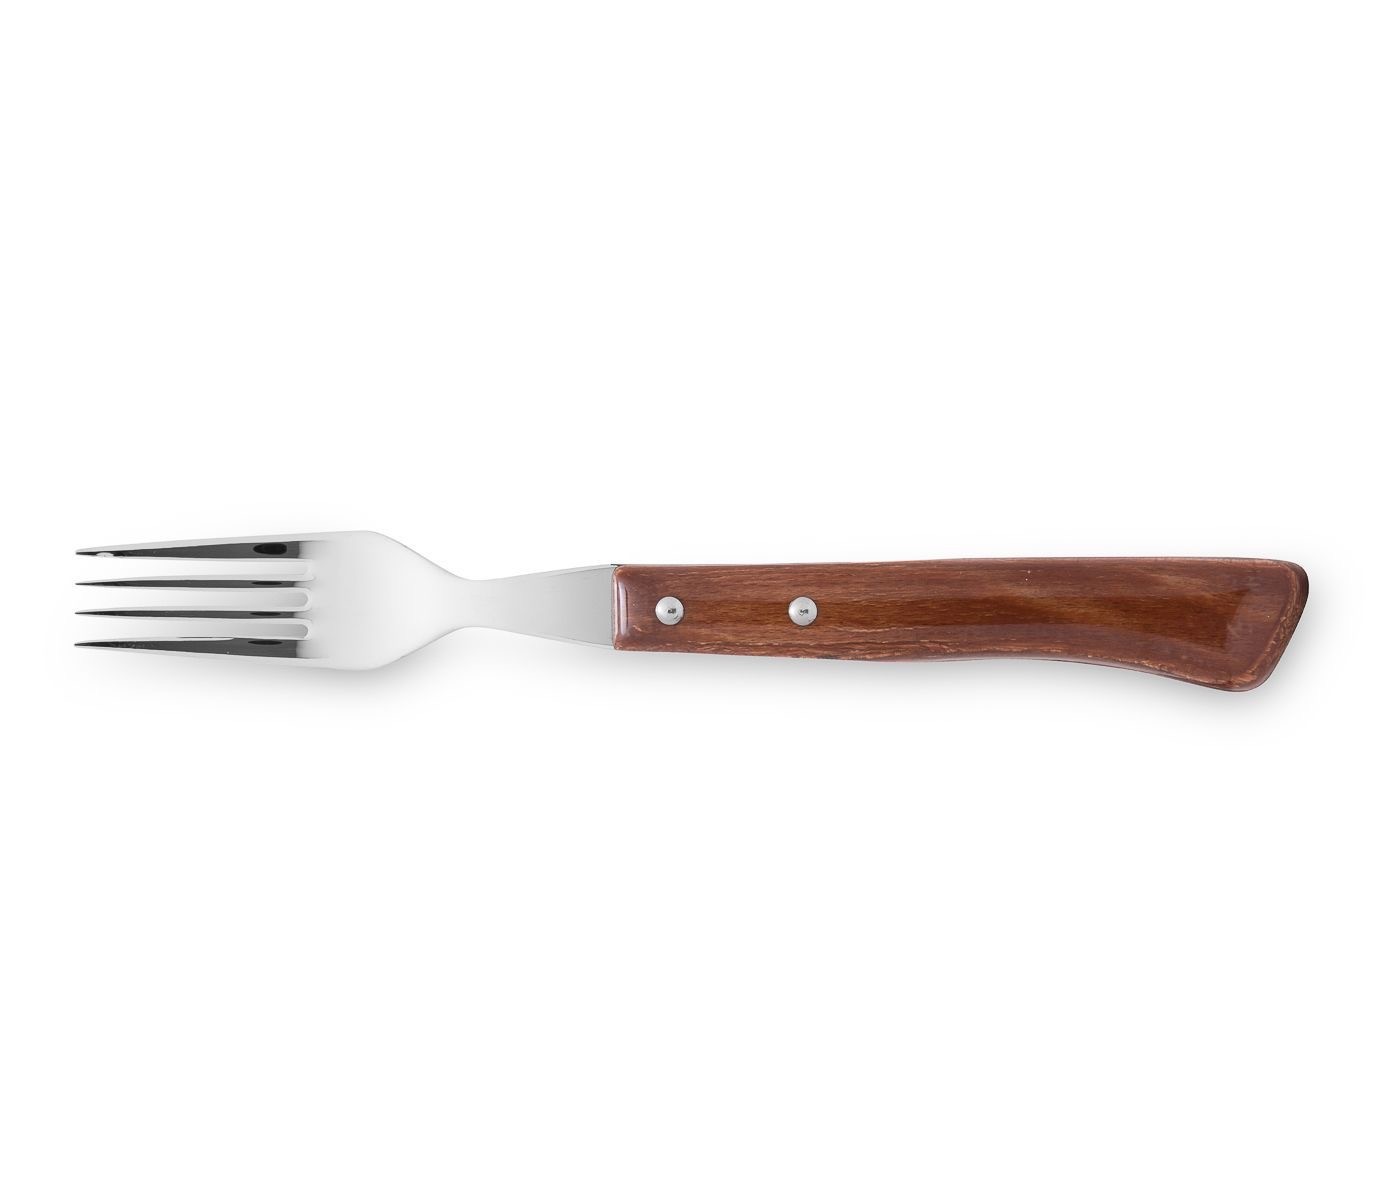 Tenedores para carne de 8,9 cm de acero inoxidable - 12 unidades - RETIF